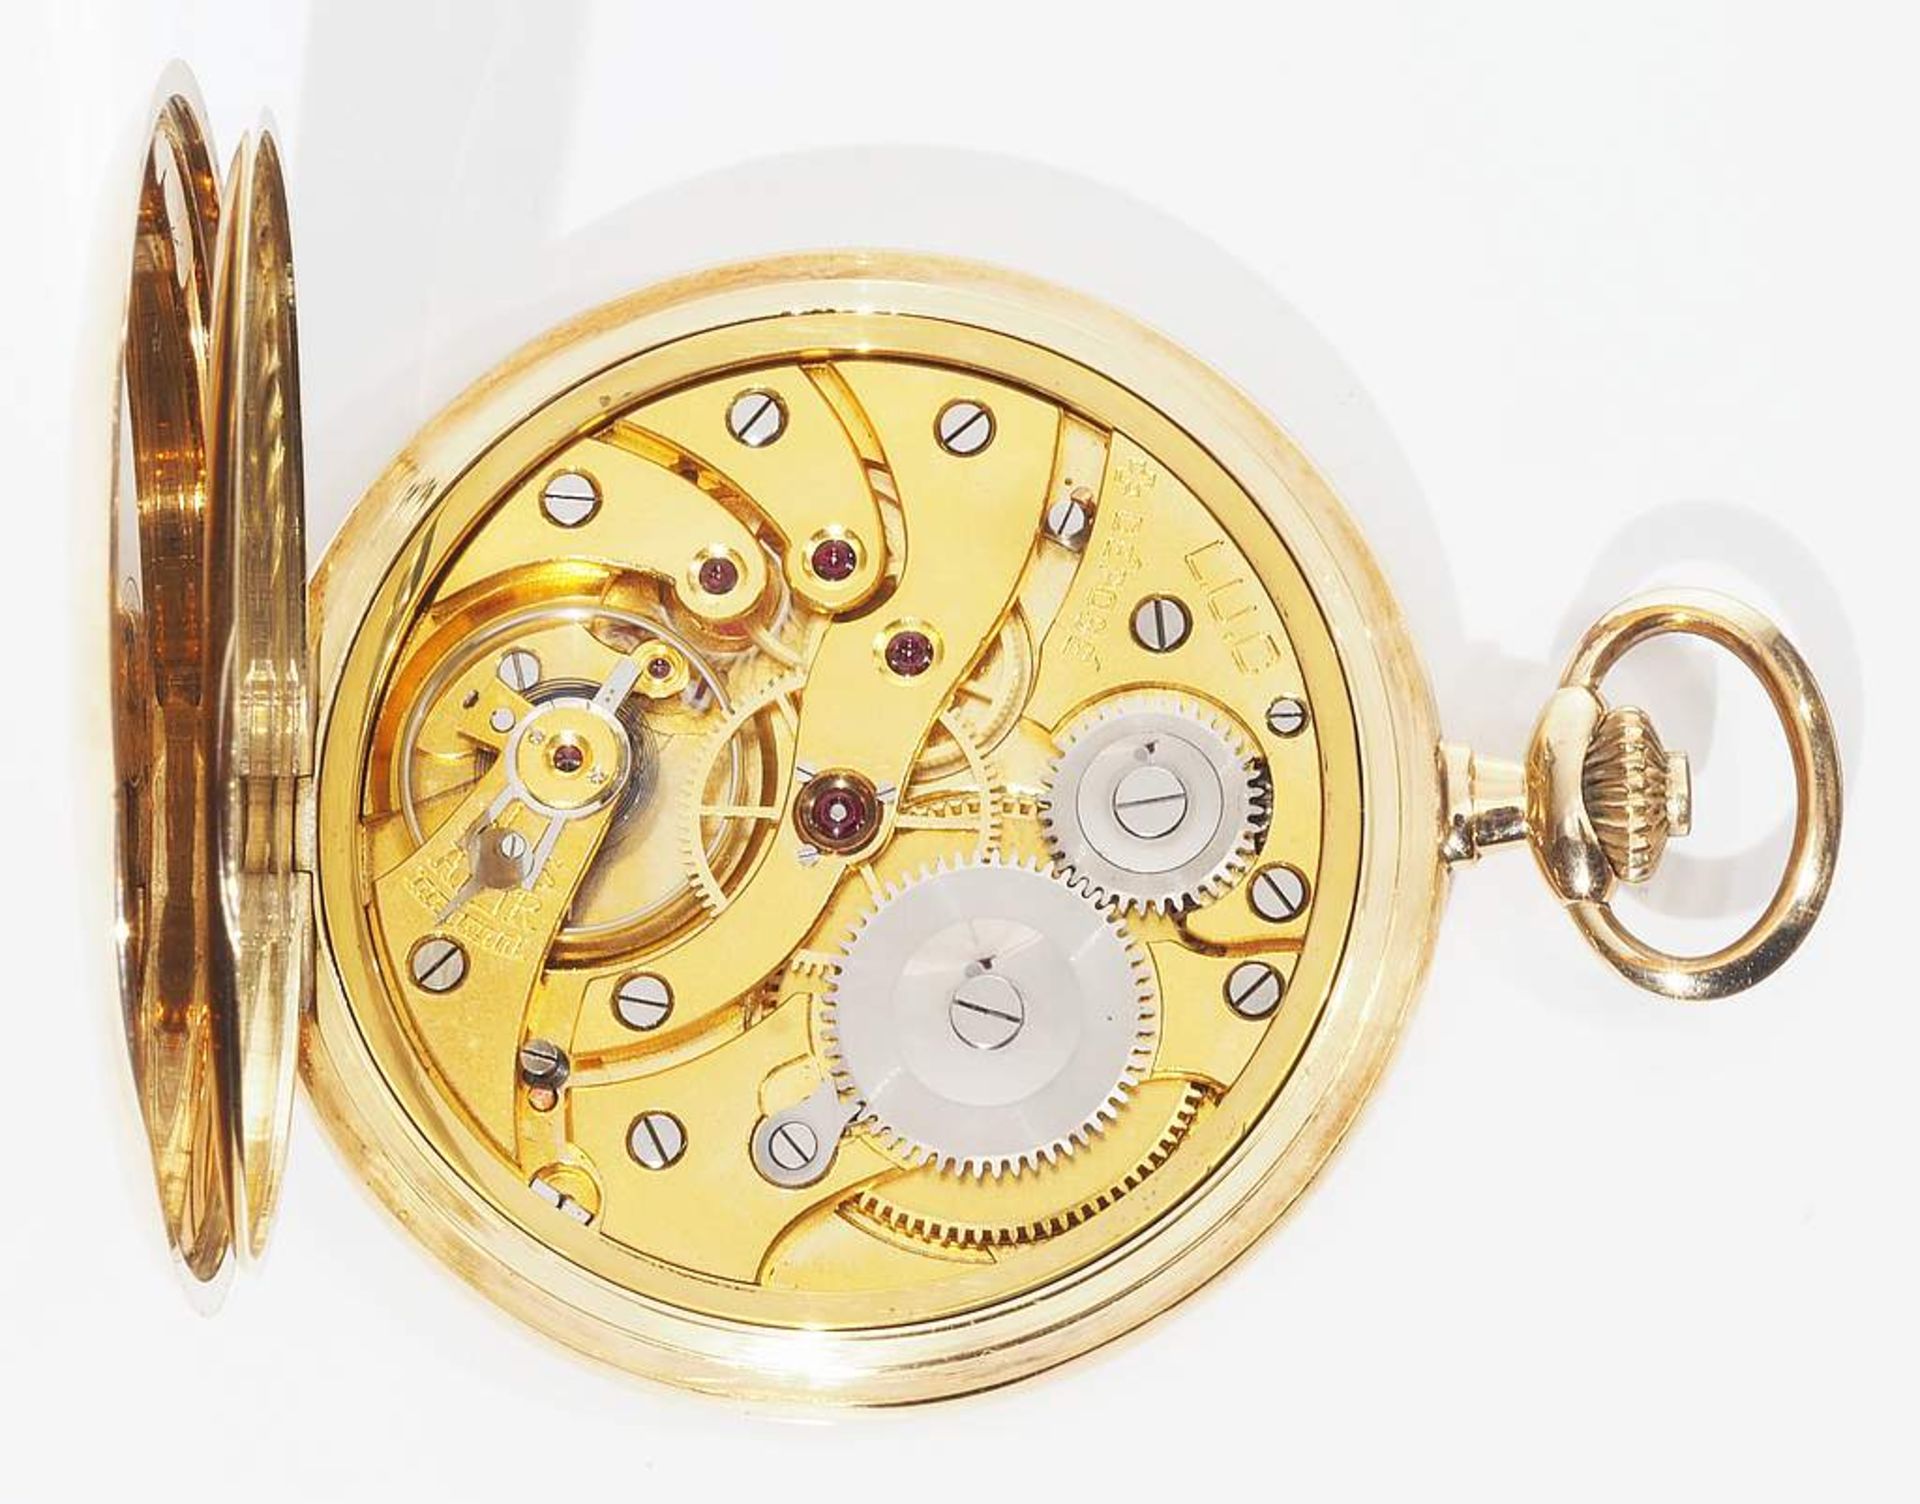 Sprungdeckel-Uhr. L.U.C. (Chopard). Alle Deckel 585er Gelbgold, Zifferblatt mit arabischen Zahlen - Bild 5 aus 8